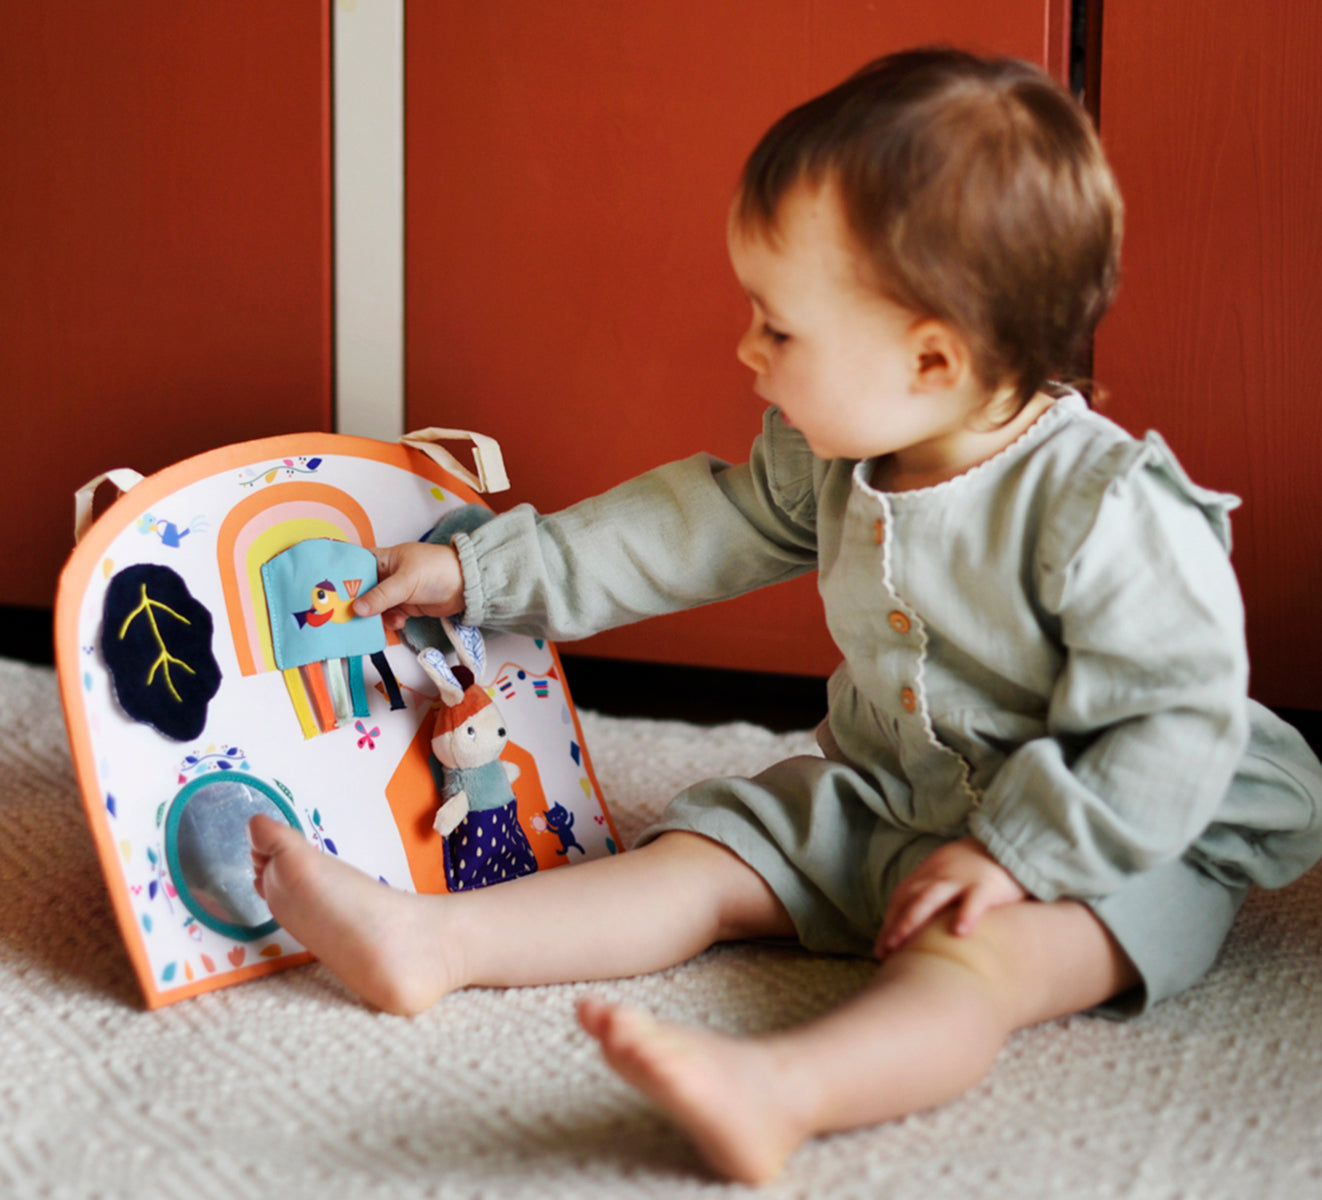 Idée cadeau de naissance originale, dès la naissance le panneau d'activités en tissu est parfait pour faire découvrir les sons, les matières, les couleurs à bébé.